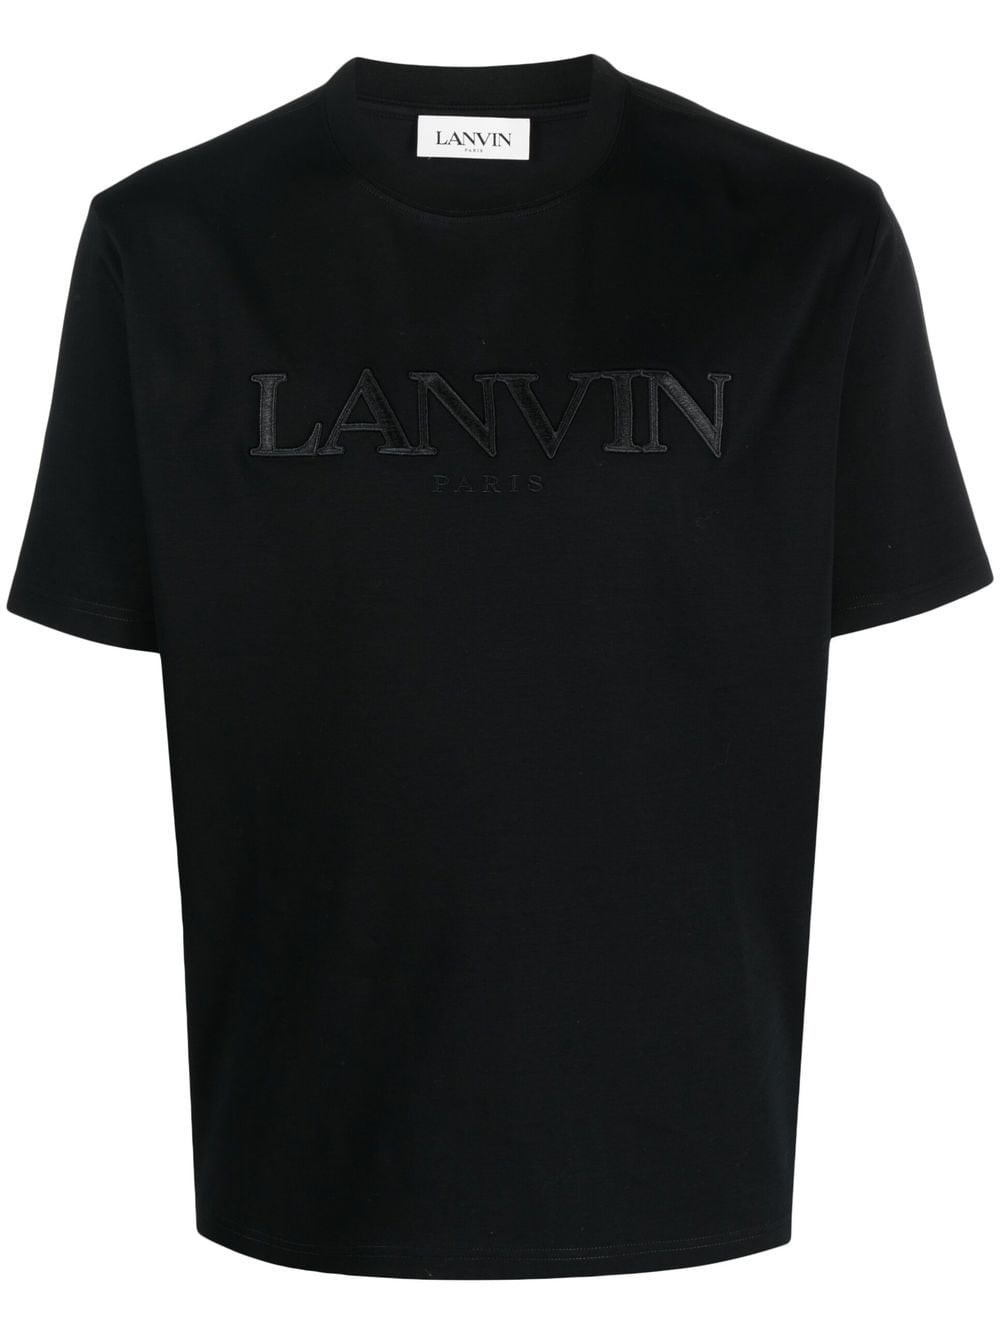 lanvin LOGO T-SHIRT available on montiboutique.com - 51992